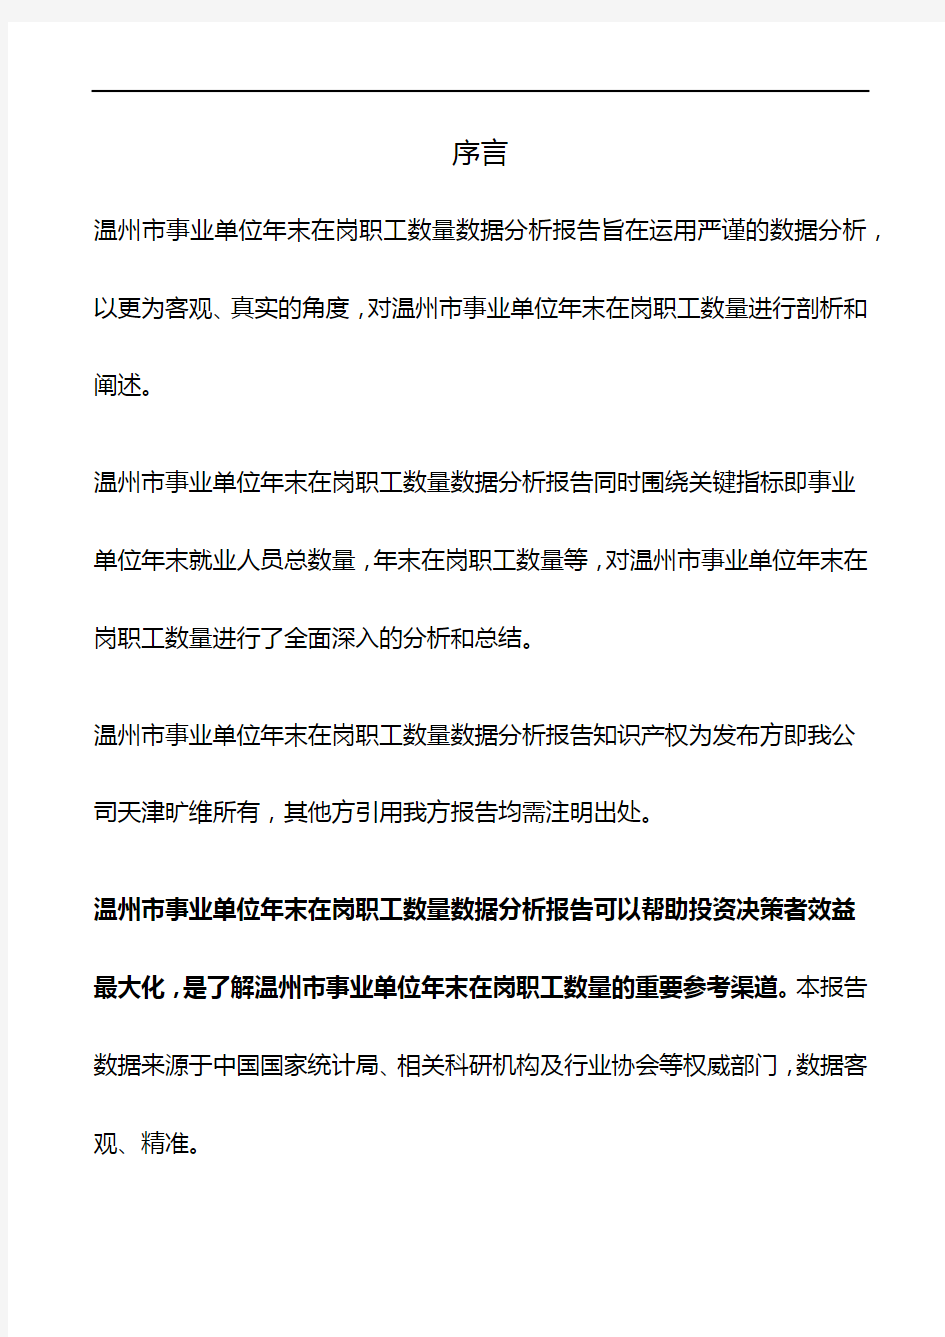 浙江省温州市事业单位年末在岗职工数量数据分析报告2019版